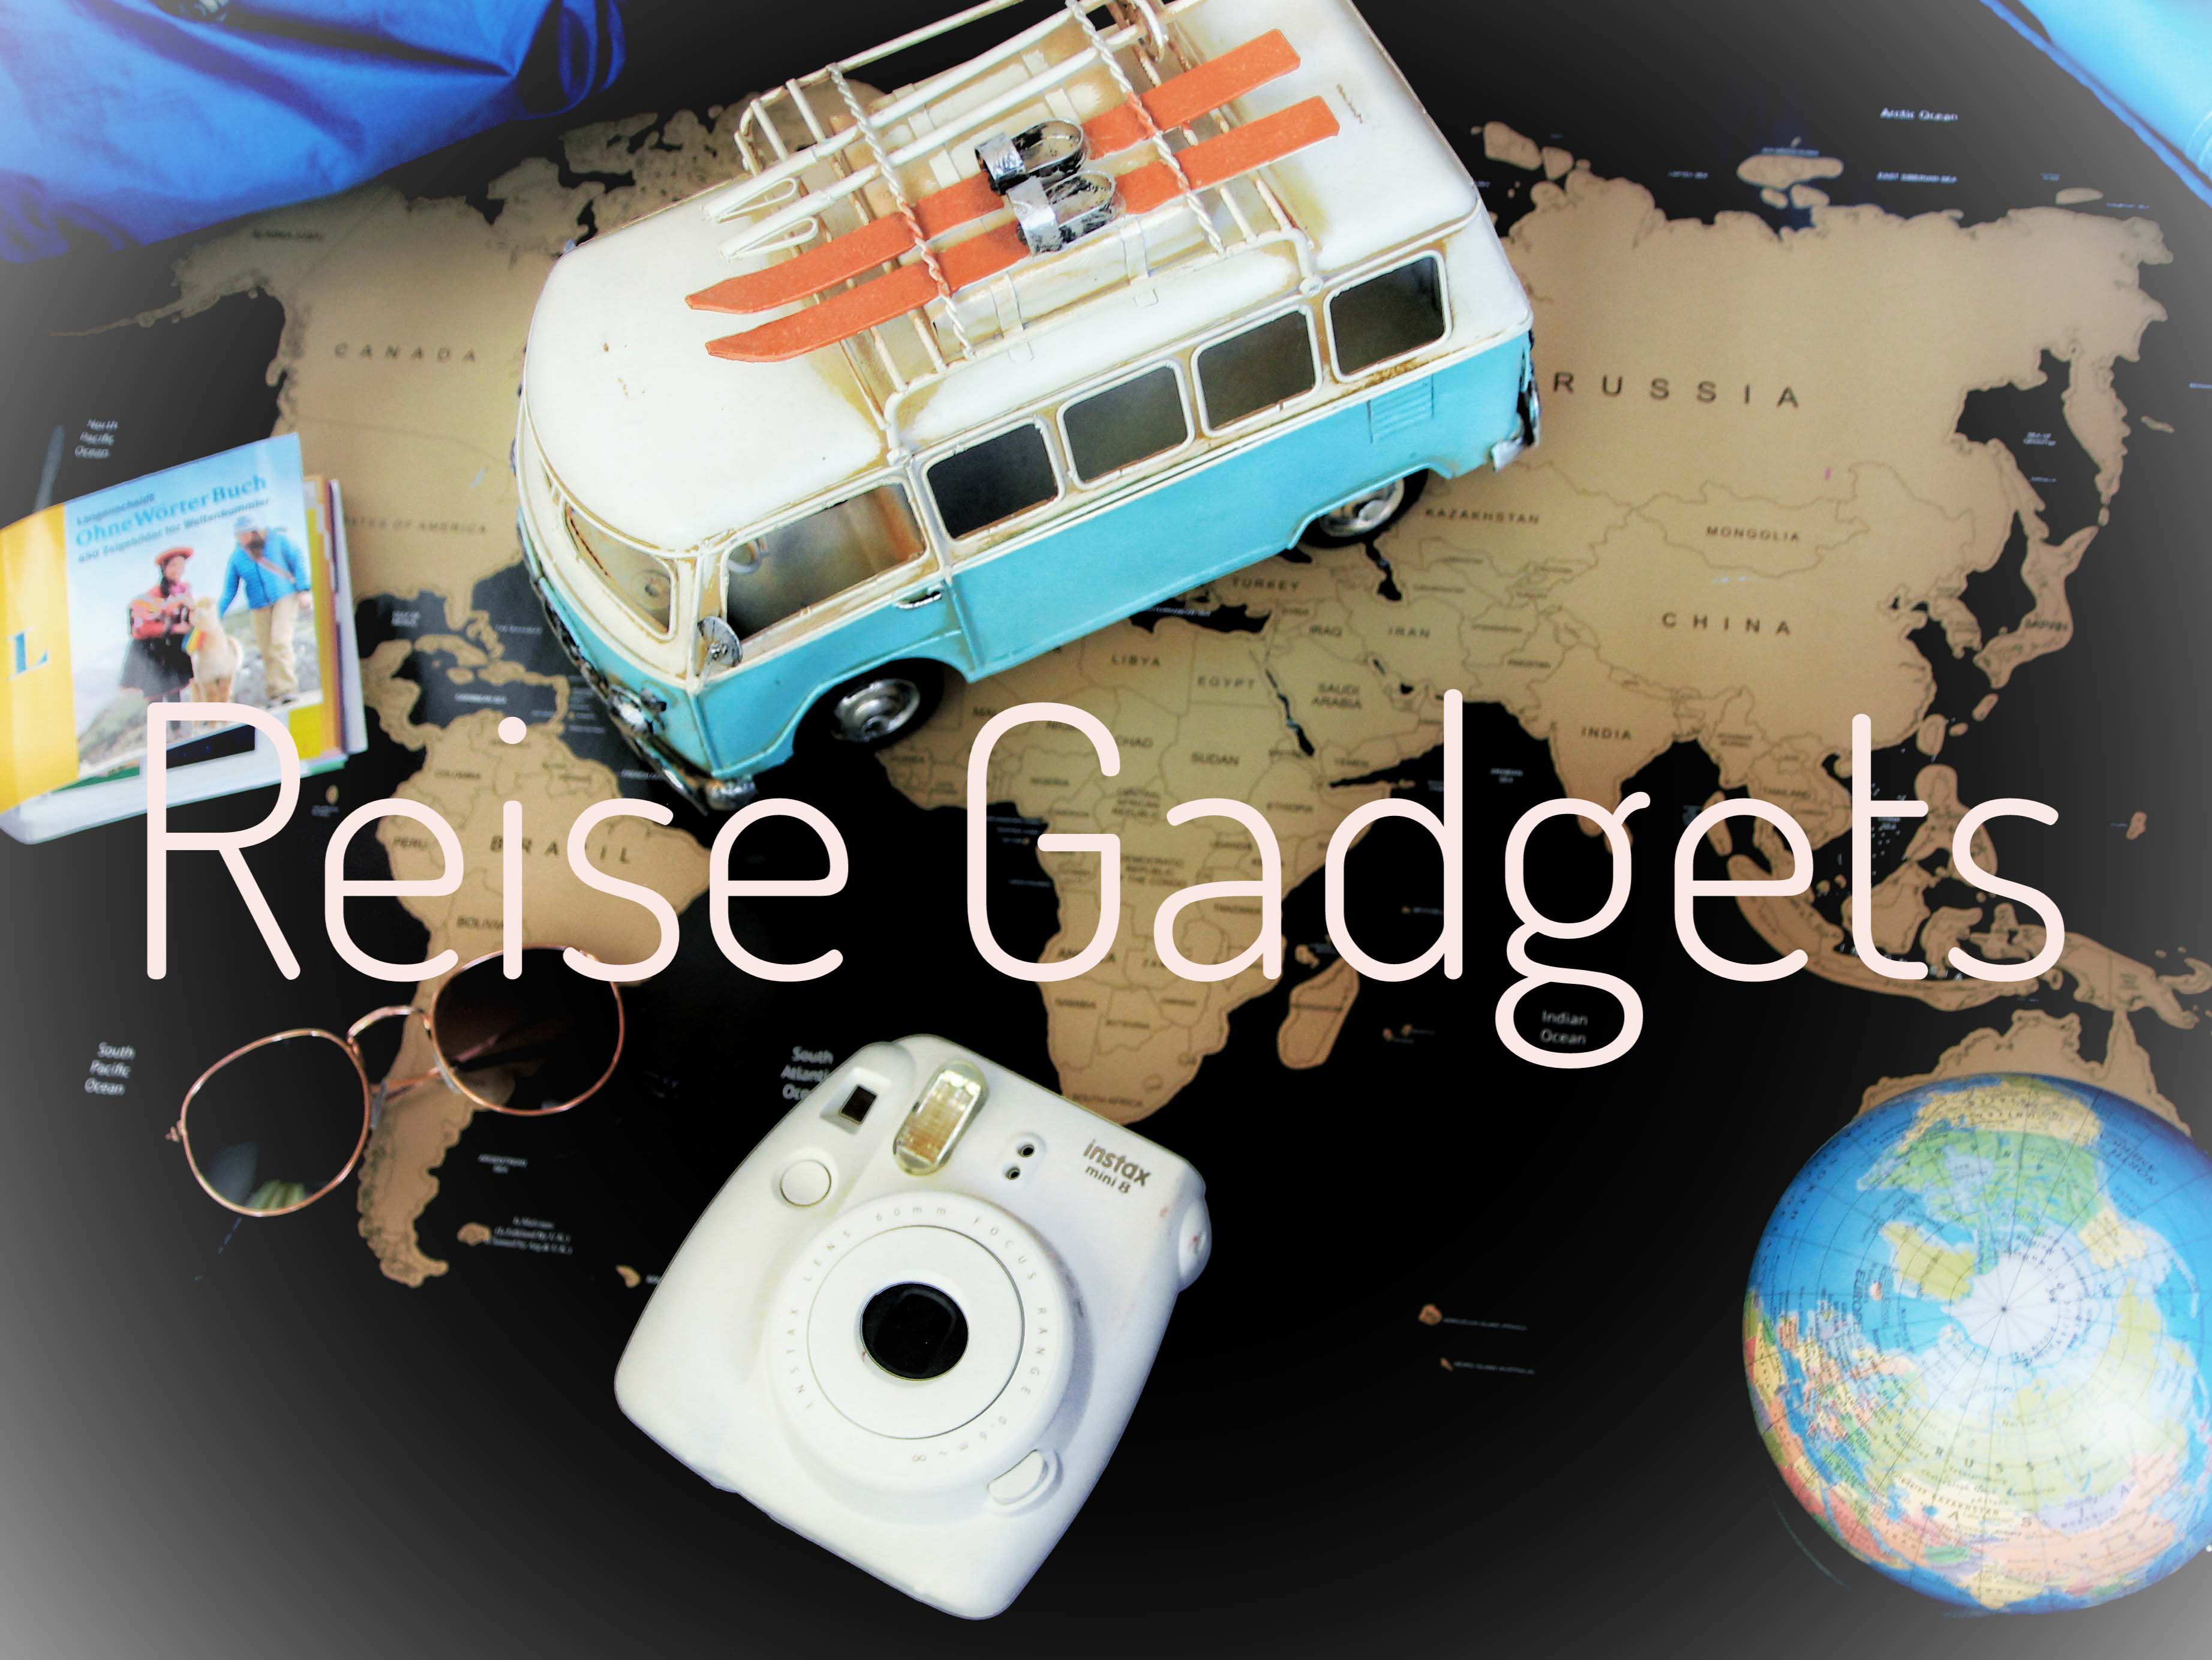 Coole Reise Gadgets für den Urlaub